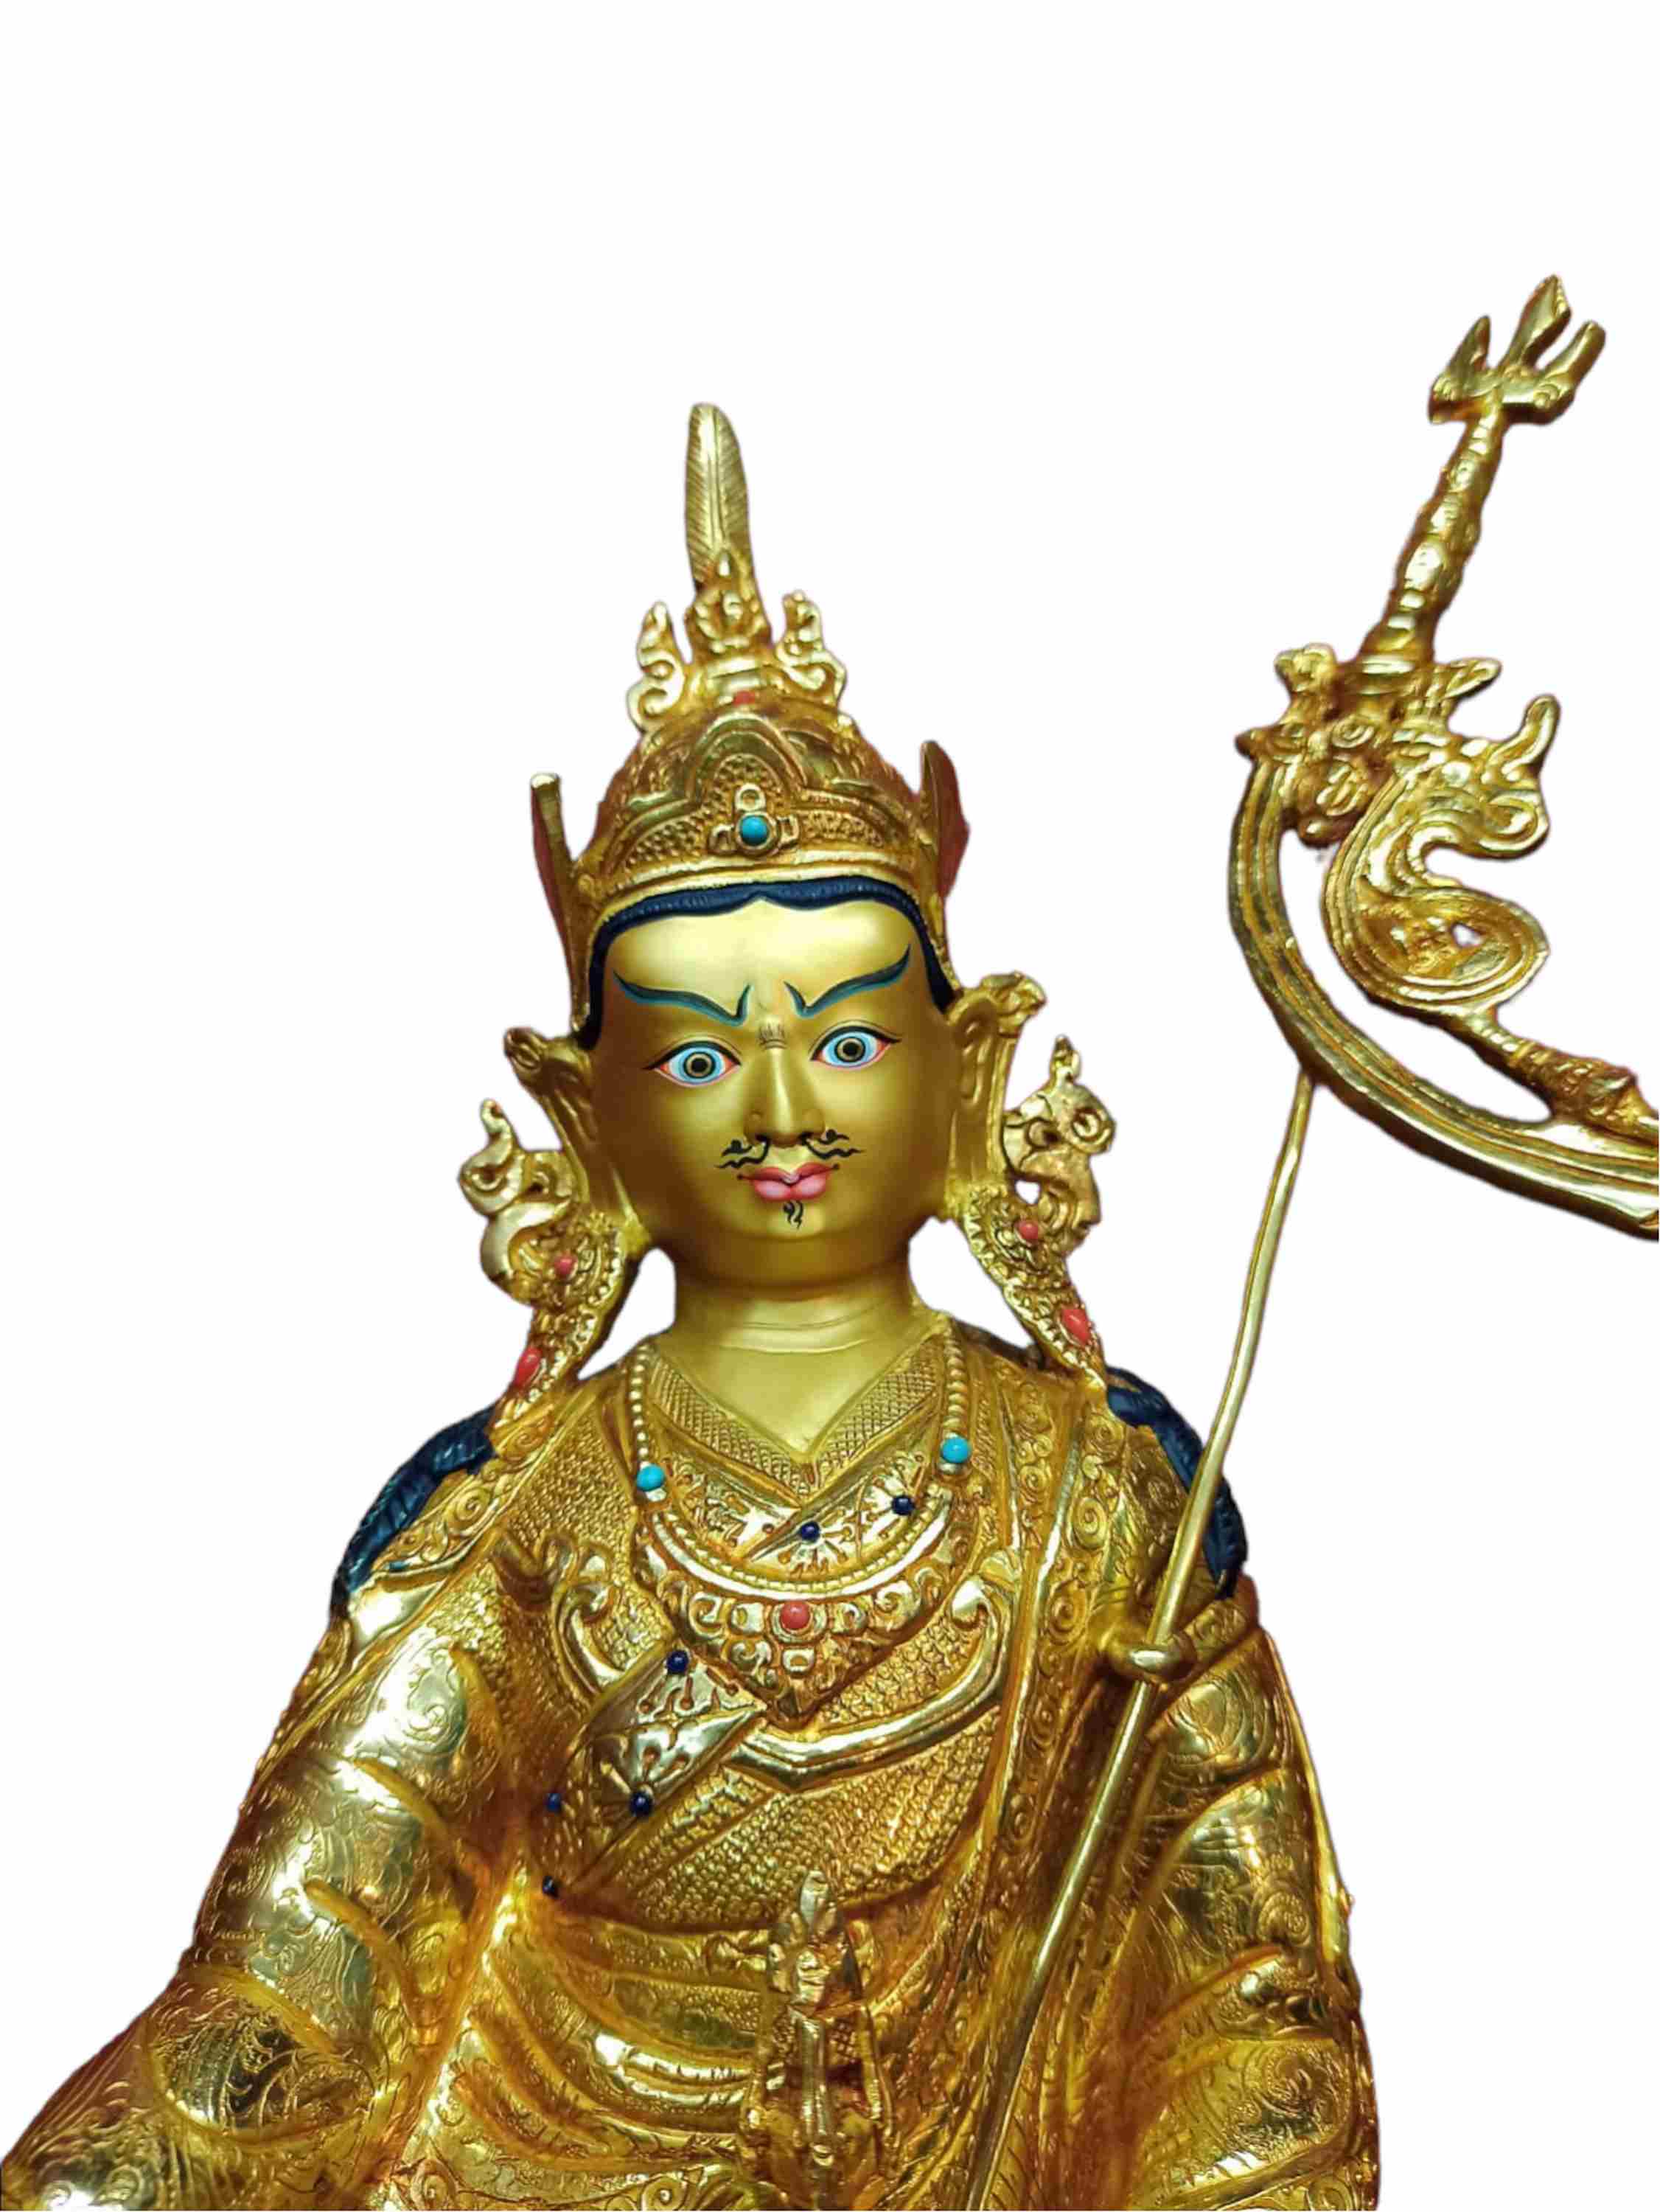 Buddhist Handmade Statue Of Padmasambhava, full Gold Plated, Stone Setting, Face Painted